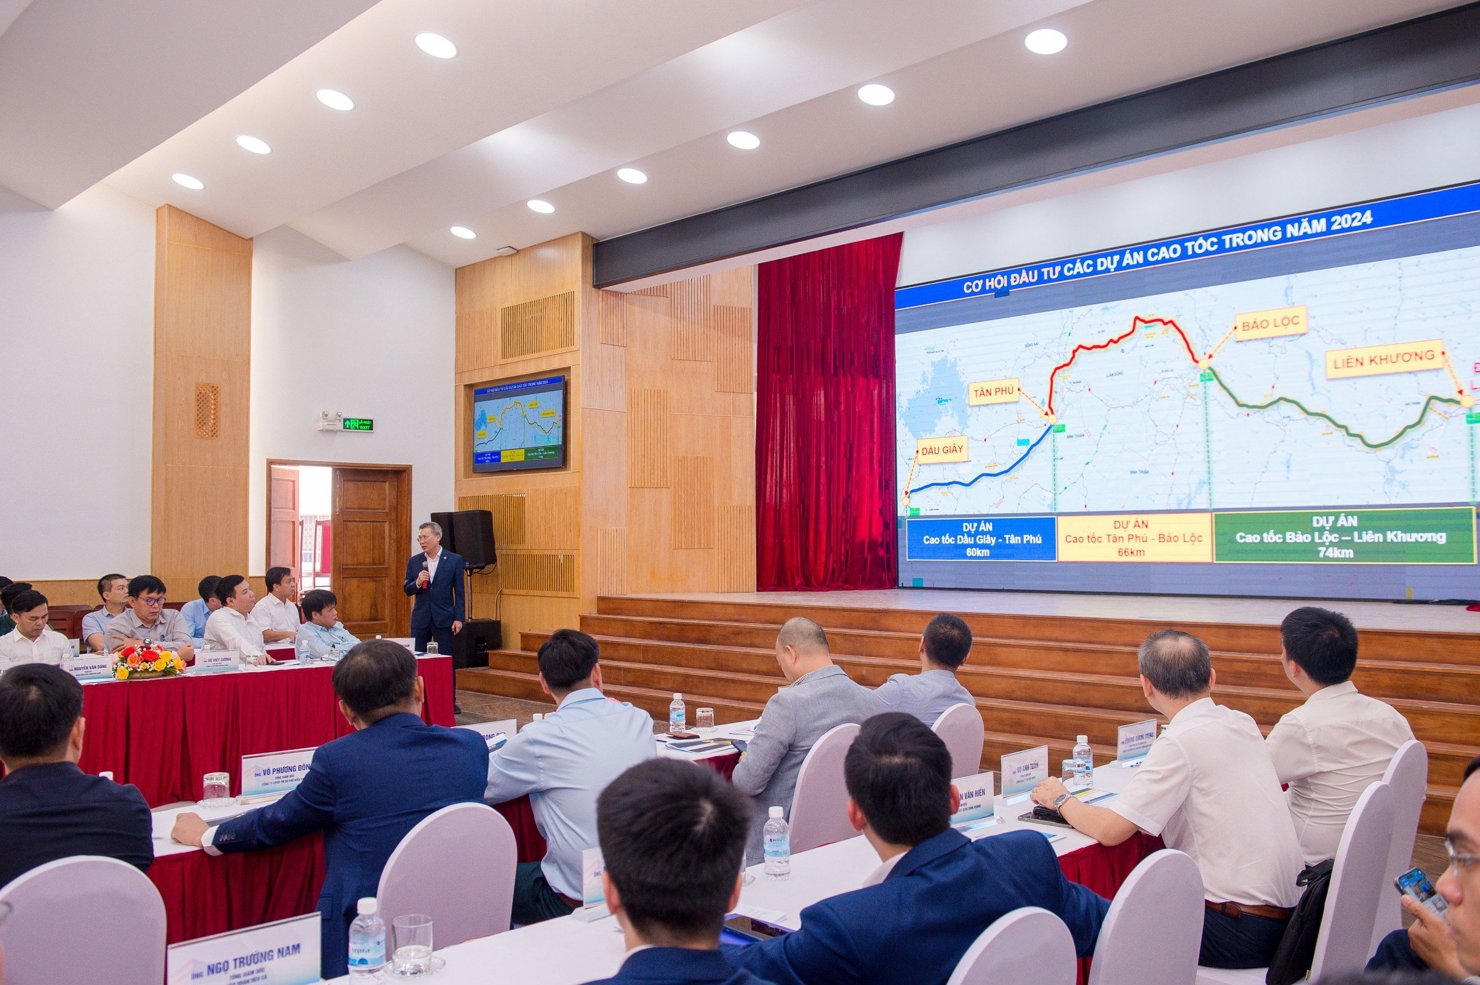 Hội nghị “Tiềm năng và cơ hội đầu tư hạ tầng giao thông theo mô hình PPP++” tổ chức ngày 1/3 tại TP. Hồ Chính Minh.